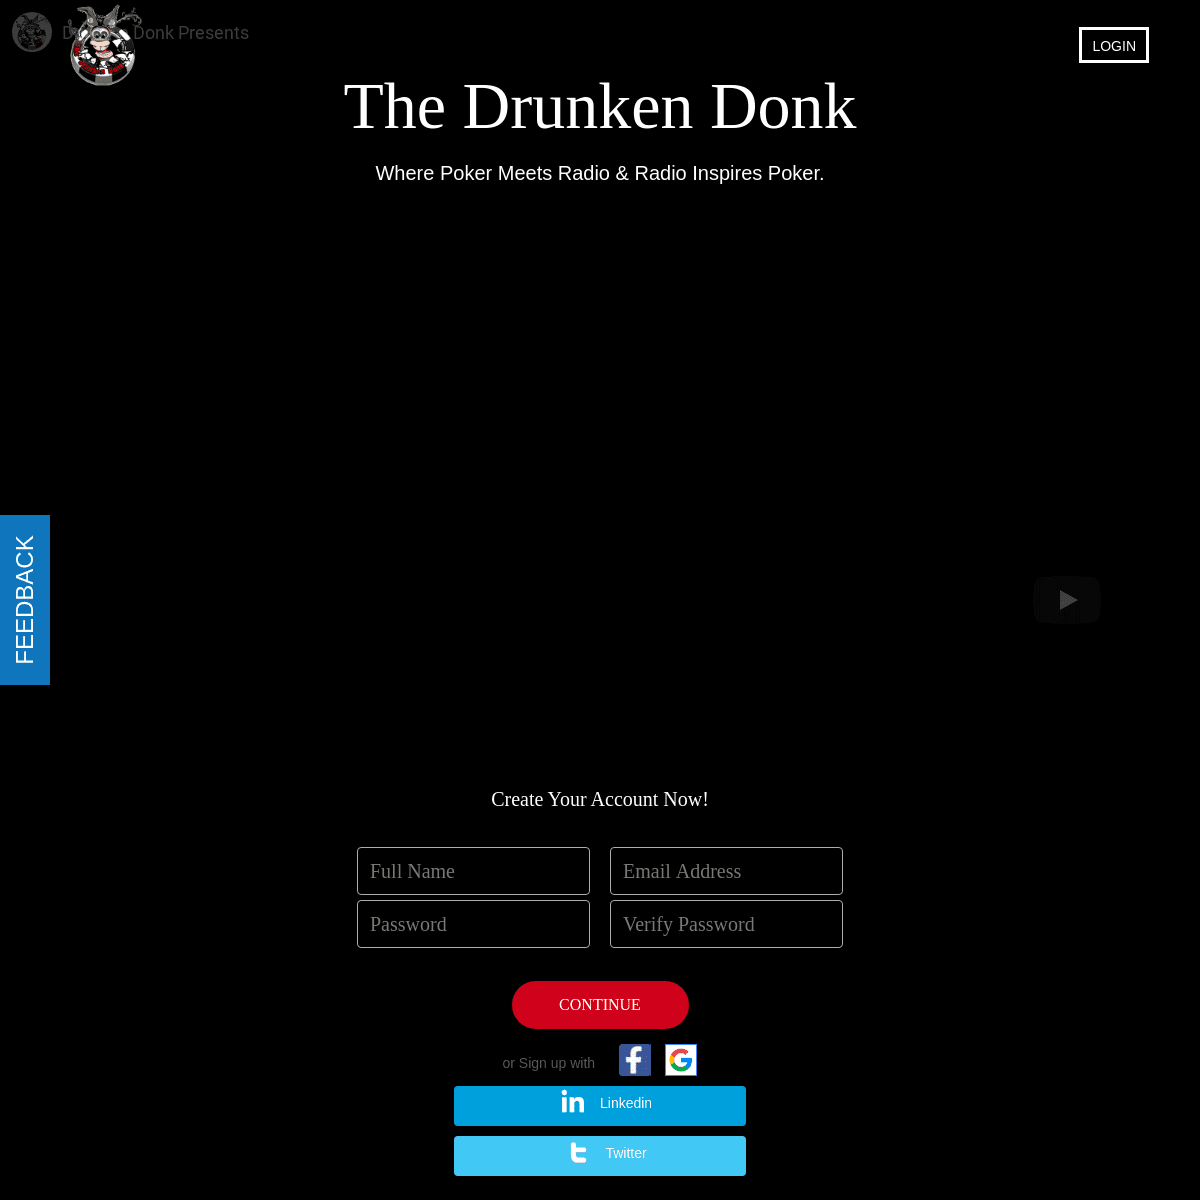 The Drunken Donk - The Drunken Donk